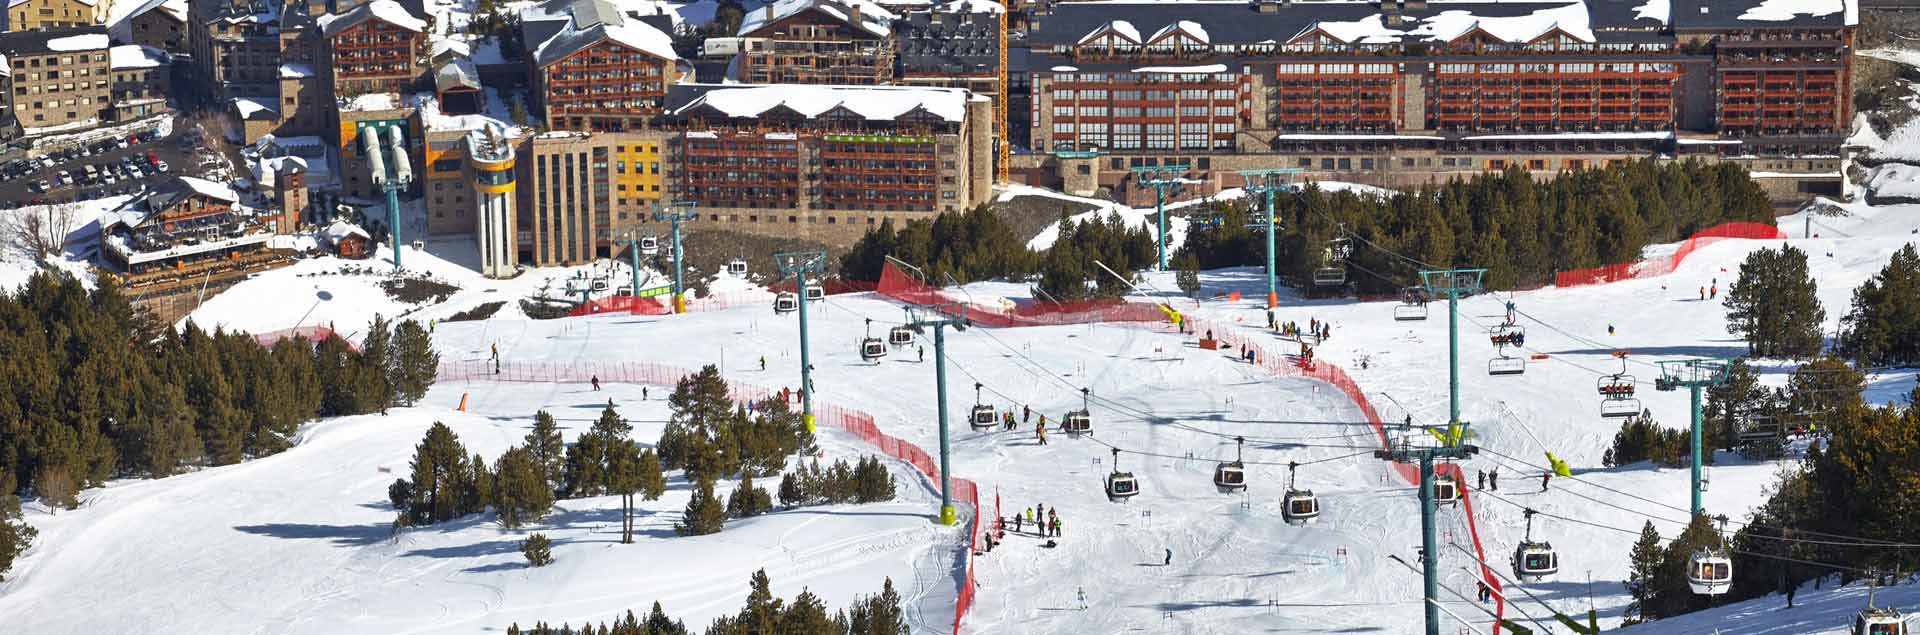 heliesquí únicament apte per als millors esquiadors a Andorra